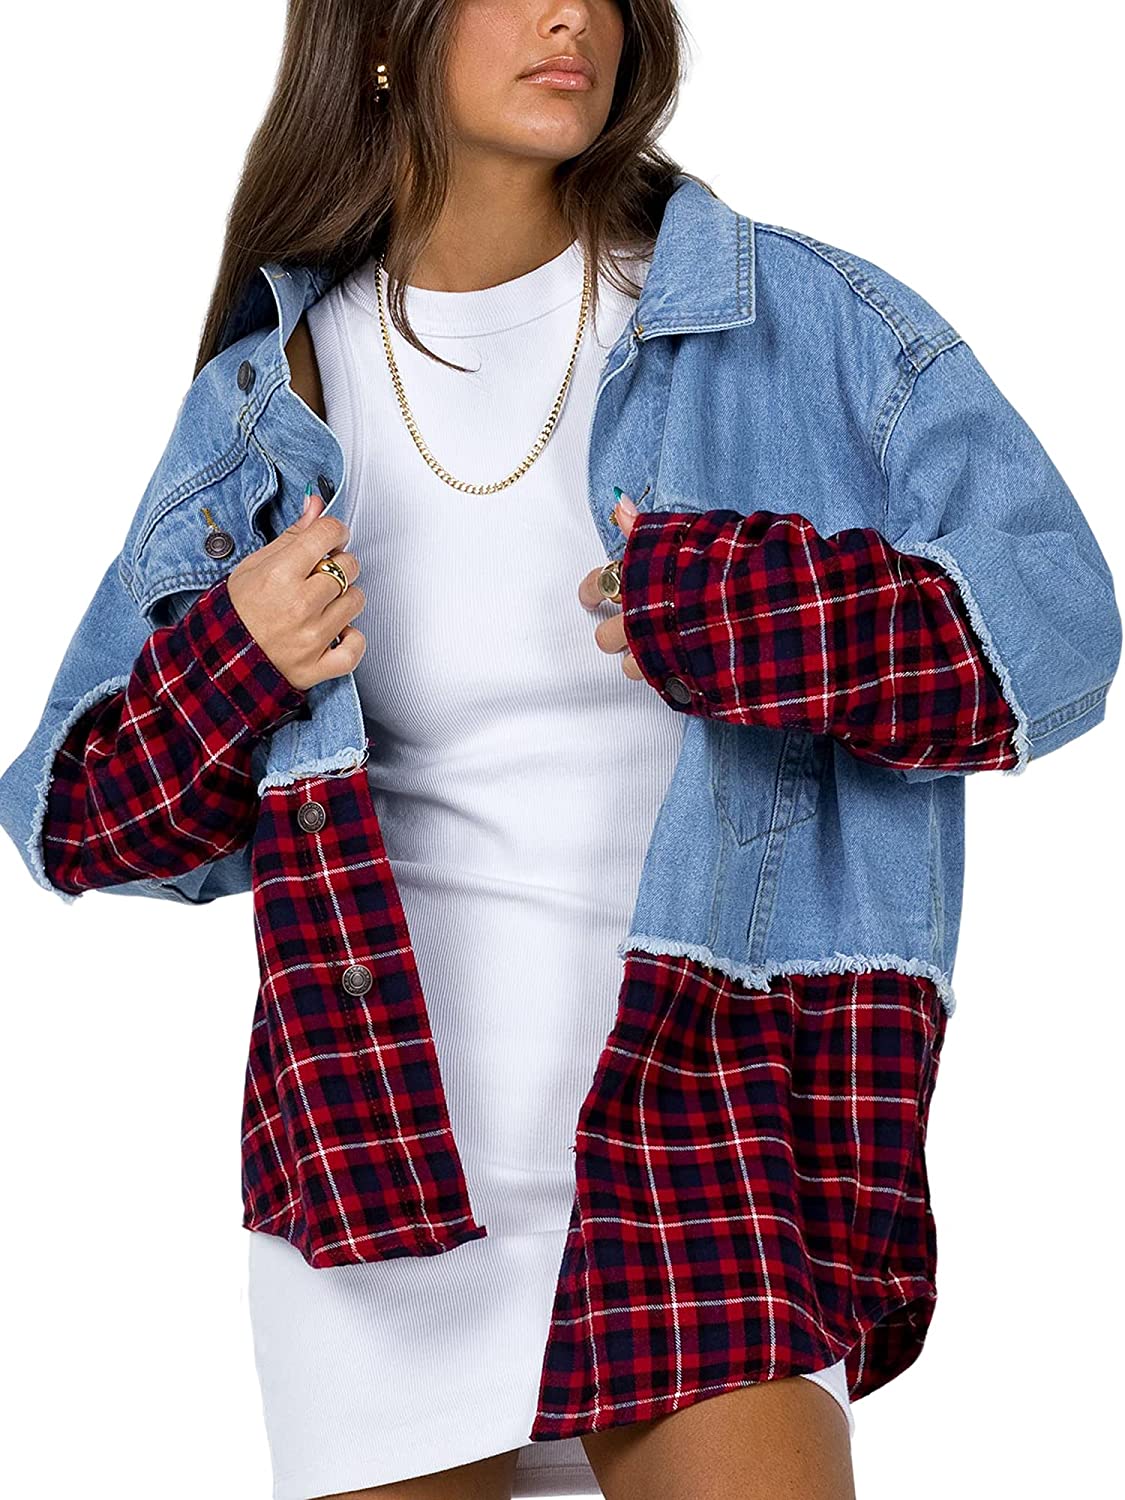 Oversized Denim Jacket for Women Long Sleeve Classic Loose Jean Trucker Jacket